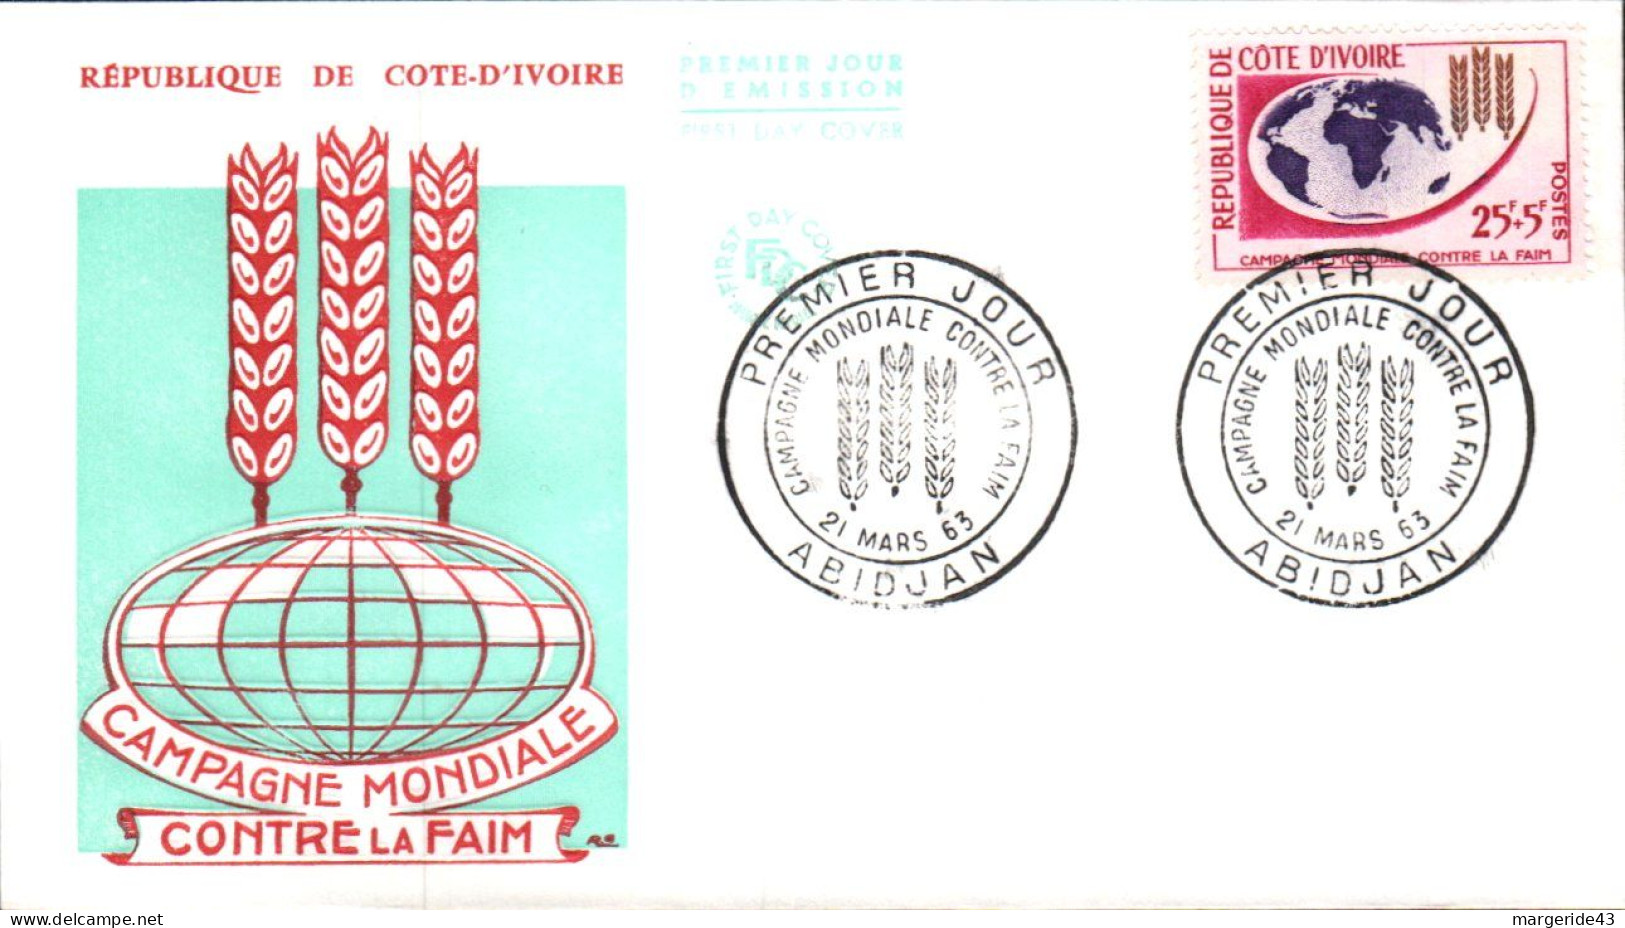 COTE D'IVOIRE FDC 1963 CAMPAGNE CONTRE LA FAIM - Ivory Coast (1960-...)